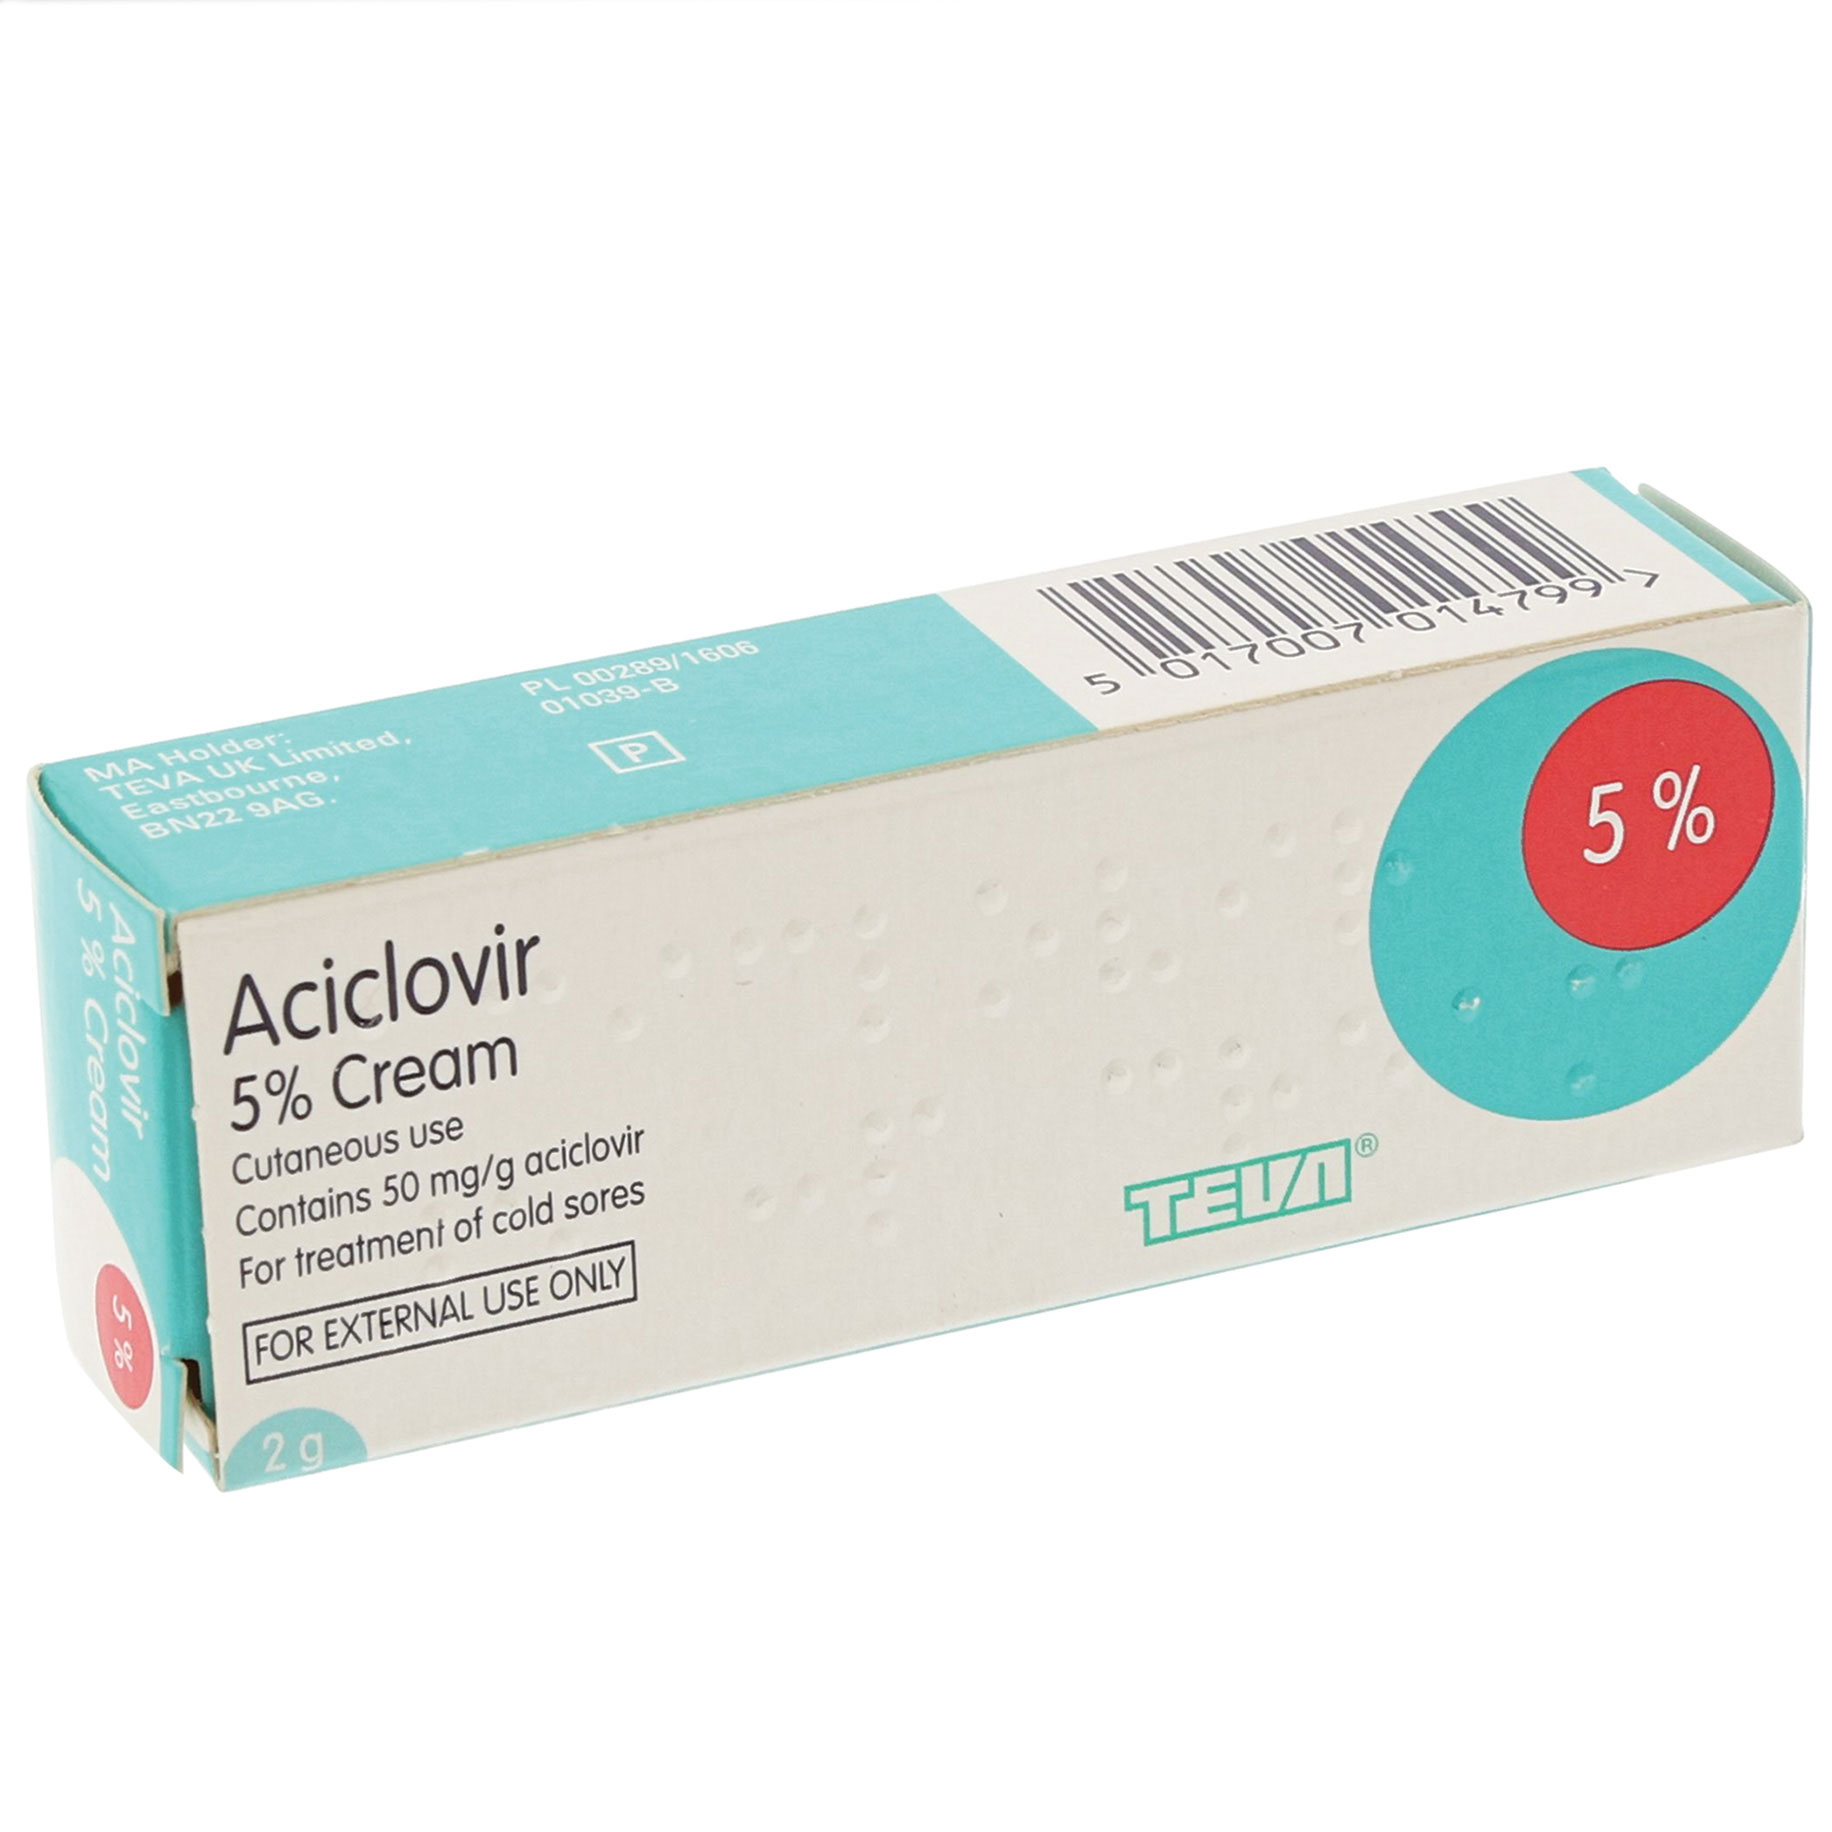 Aciclovir 5% Cream (2g) 